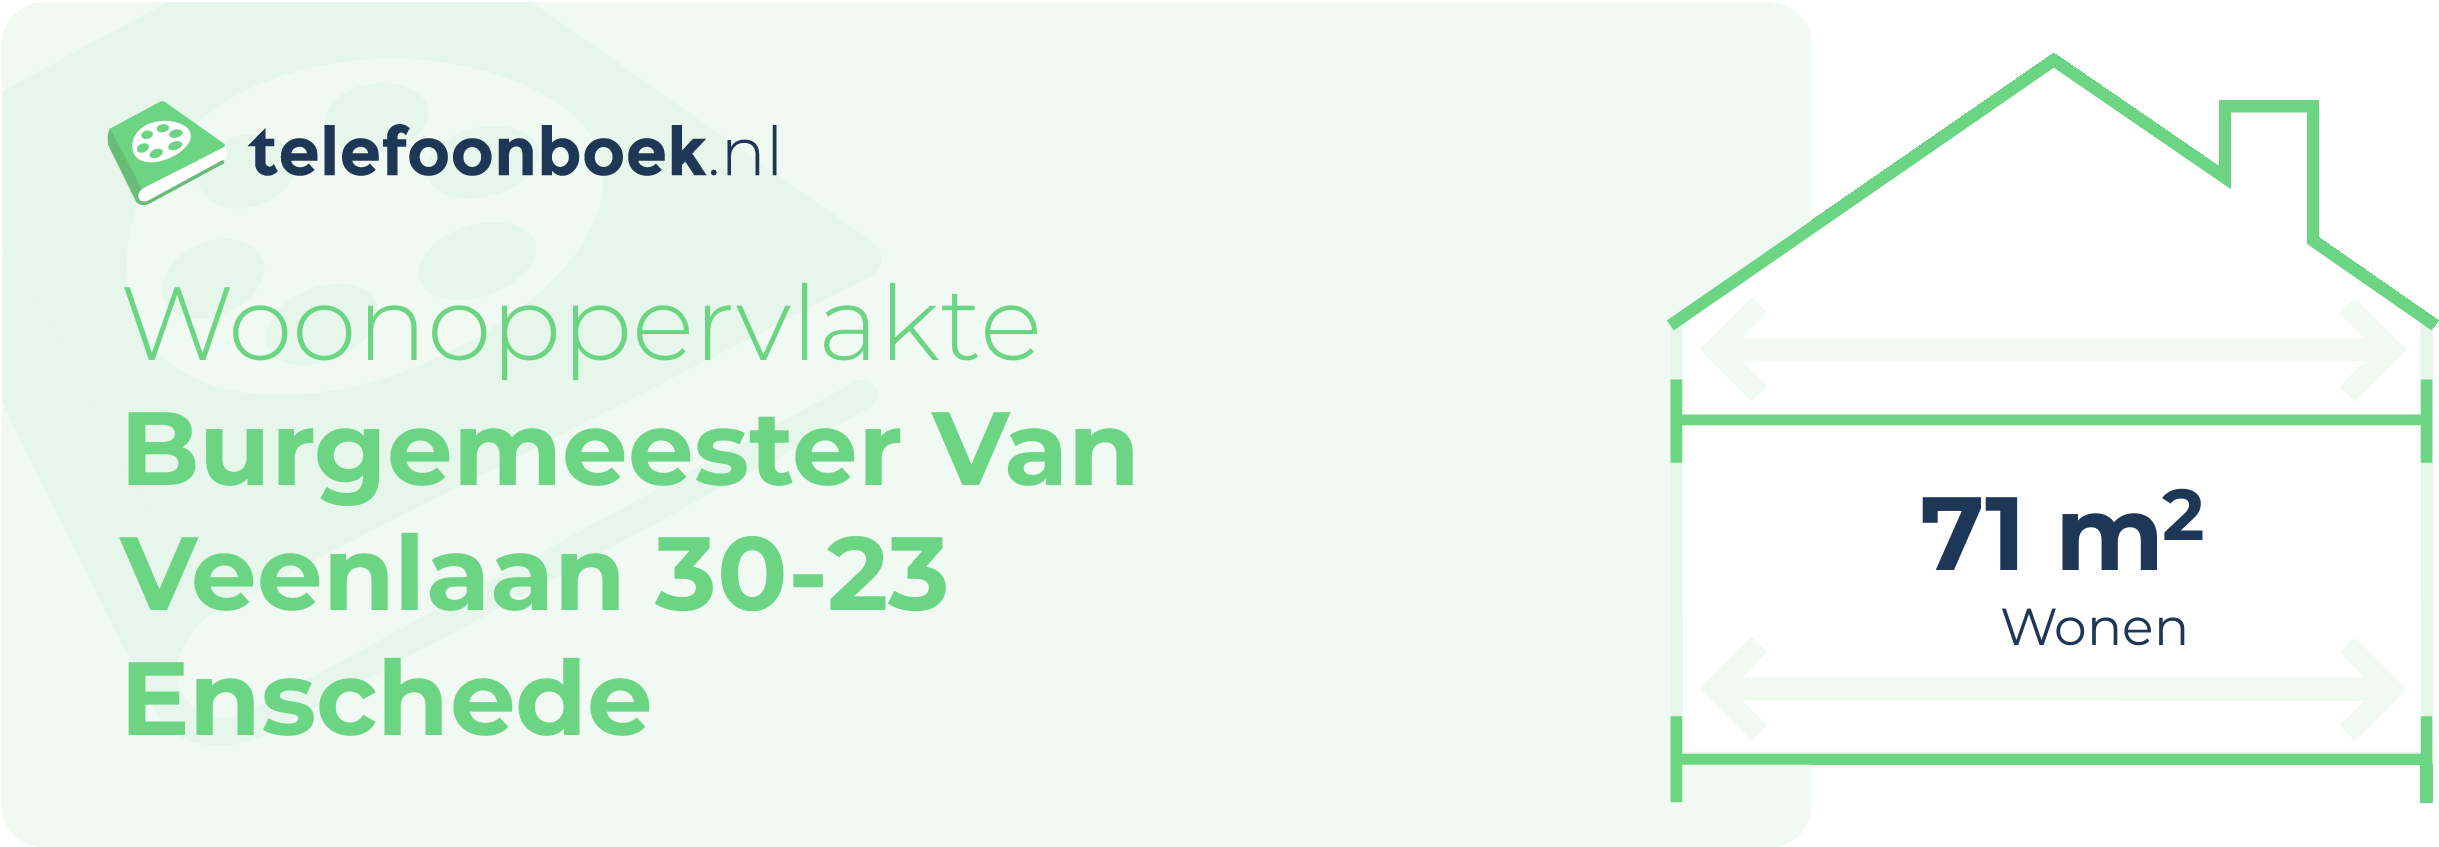 Woonoppervlakte Burgemeester Van Veenlaan 30-23 Enschede